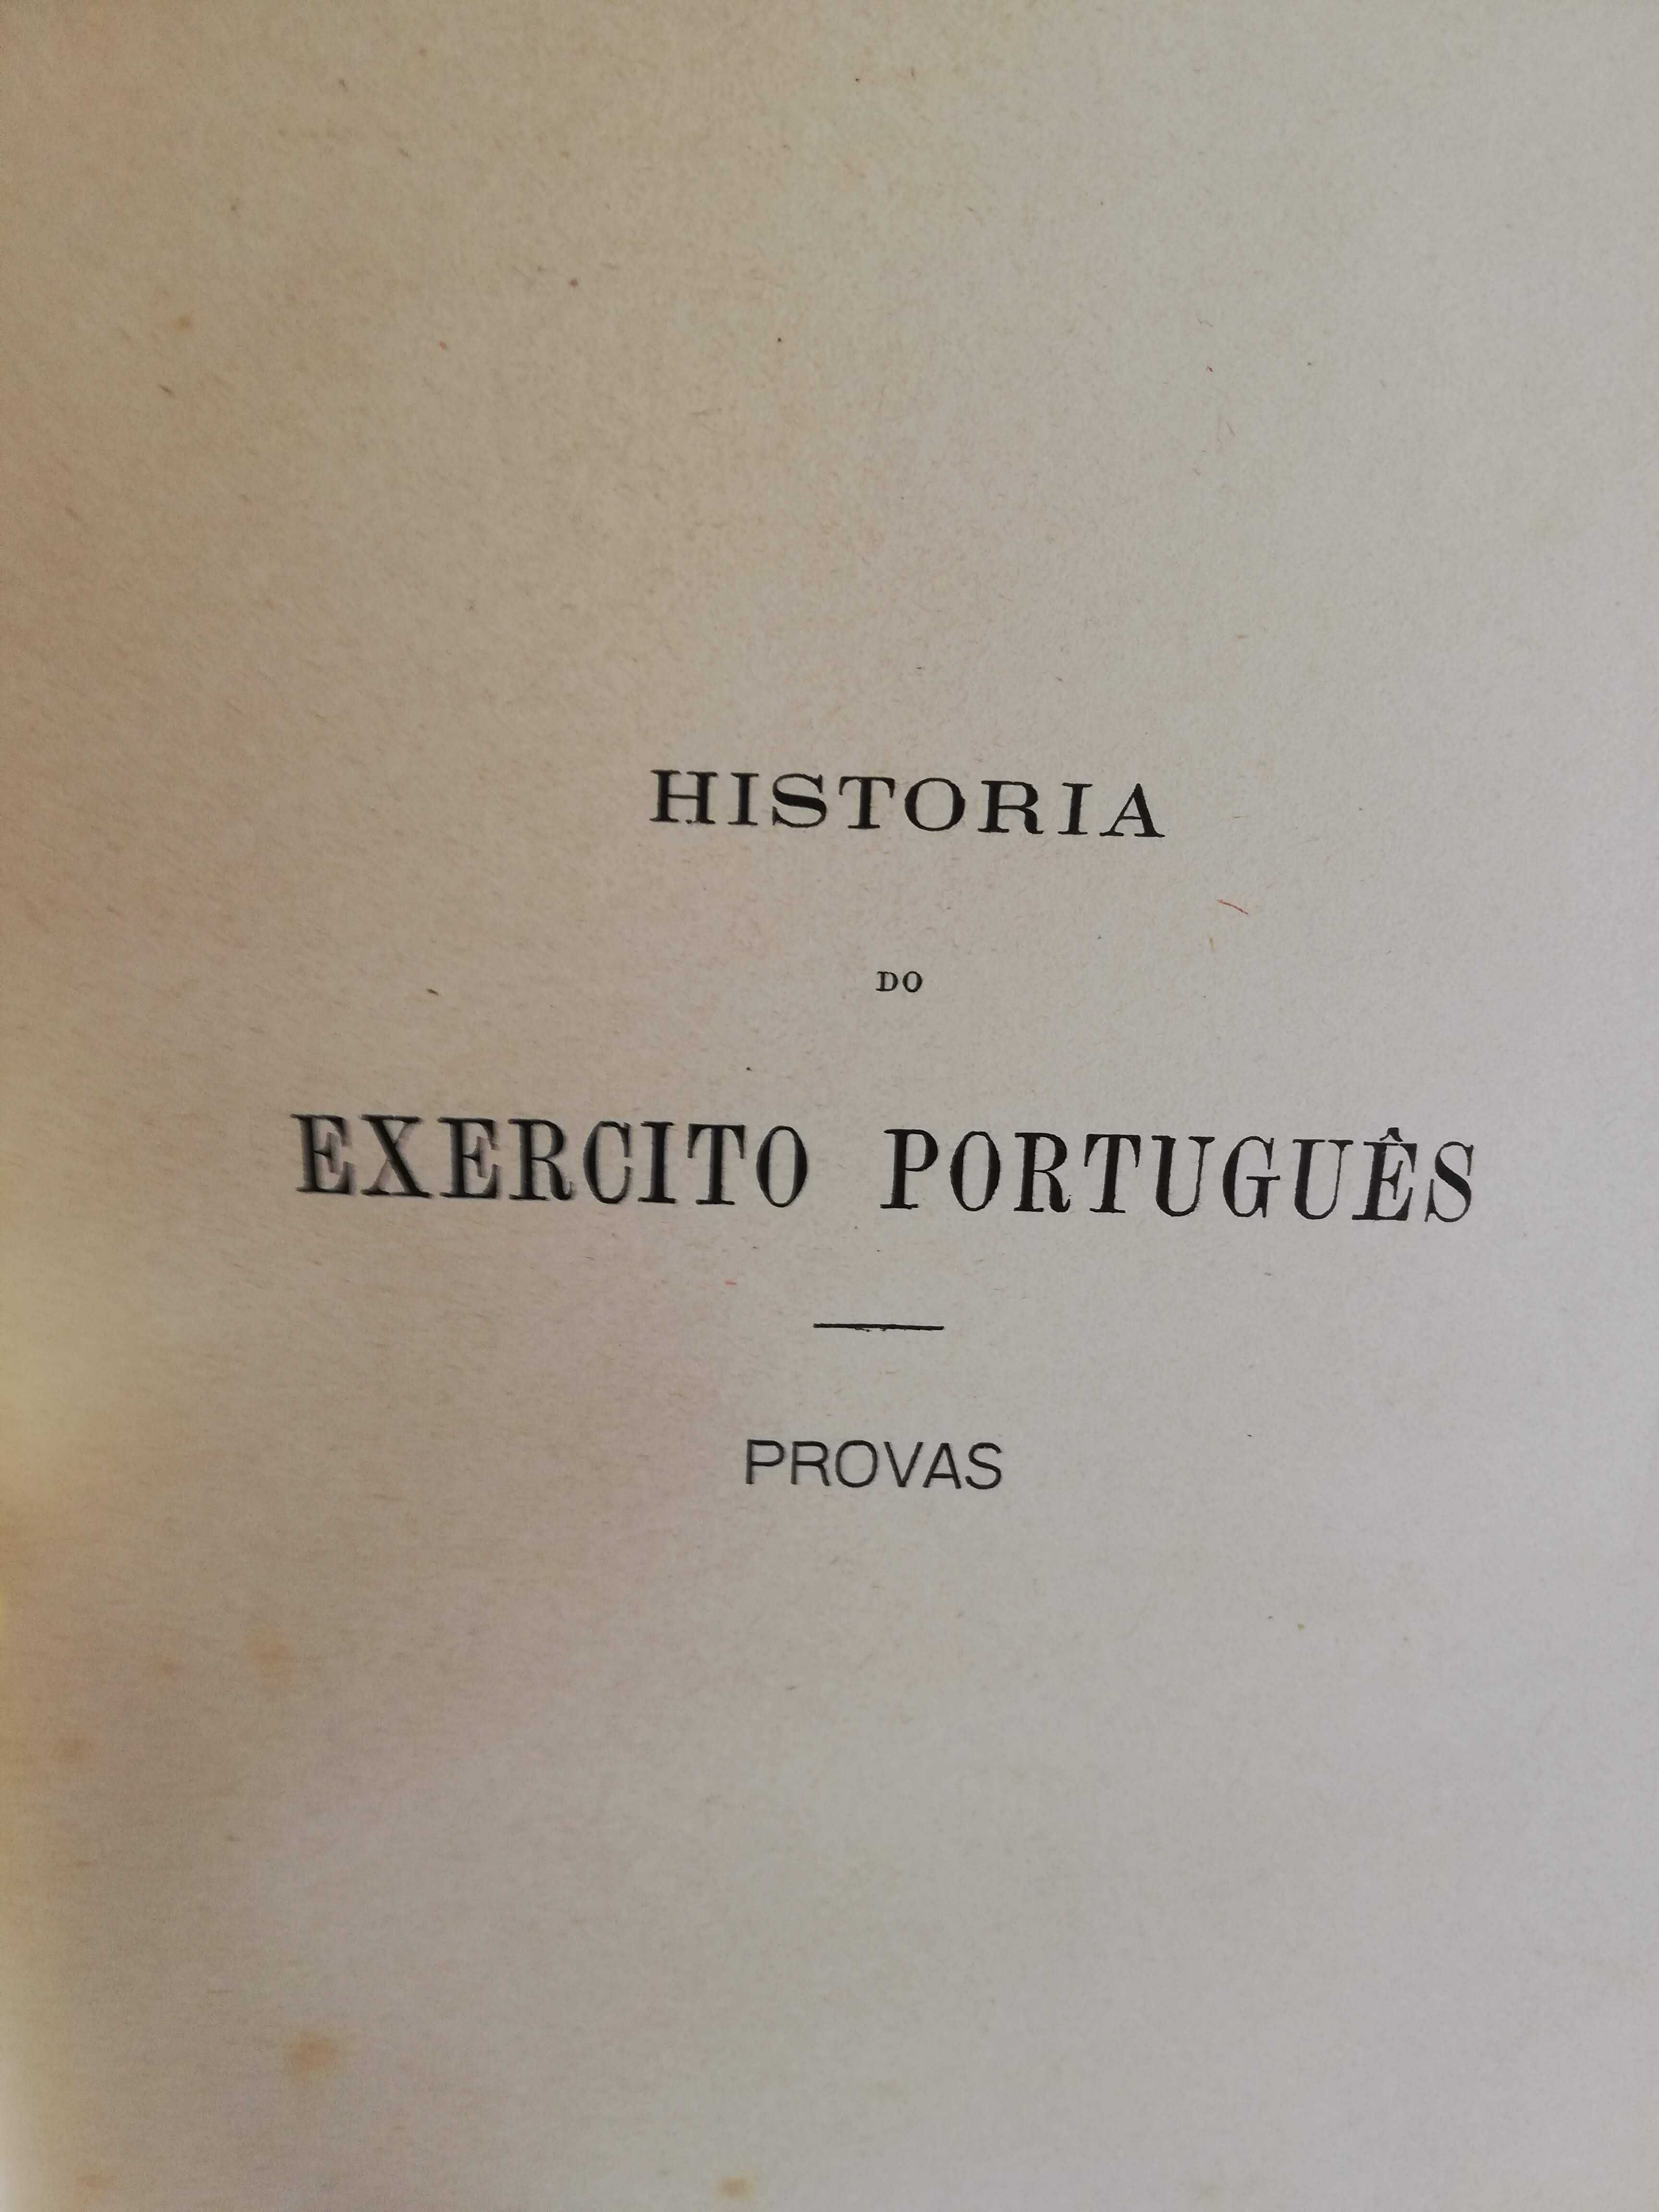 Historia orgânica e politica do exercito português, provas 30€